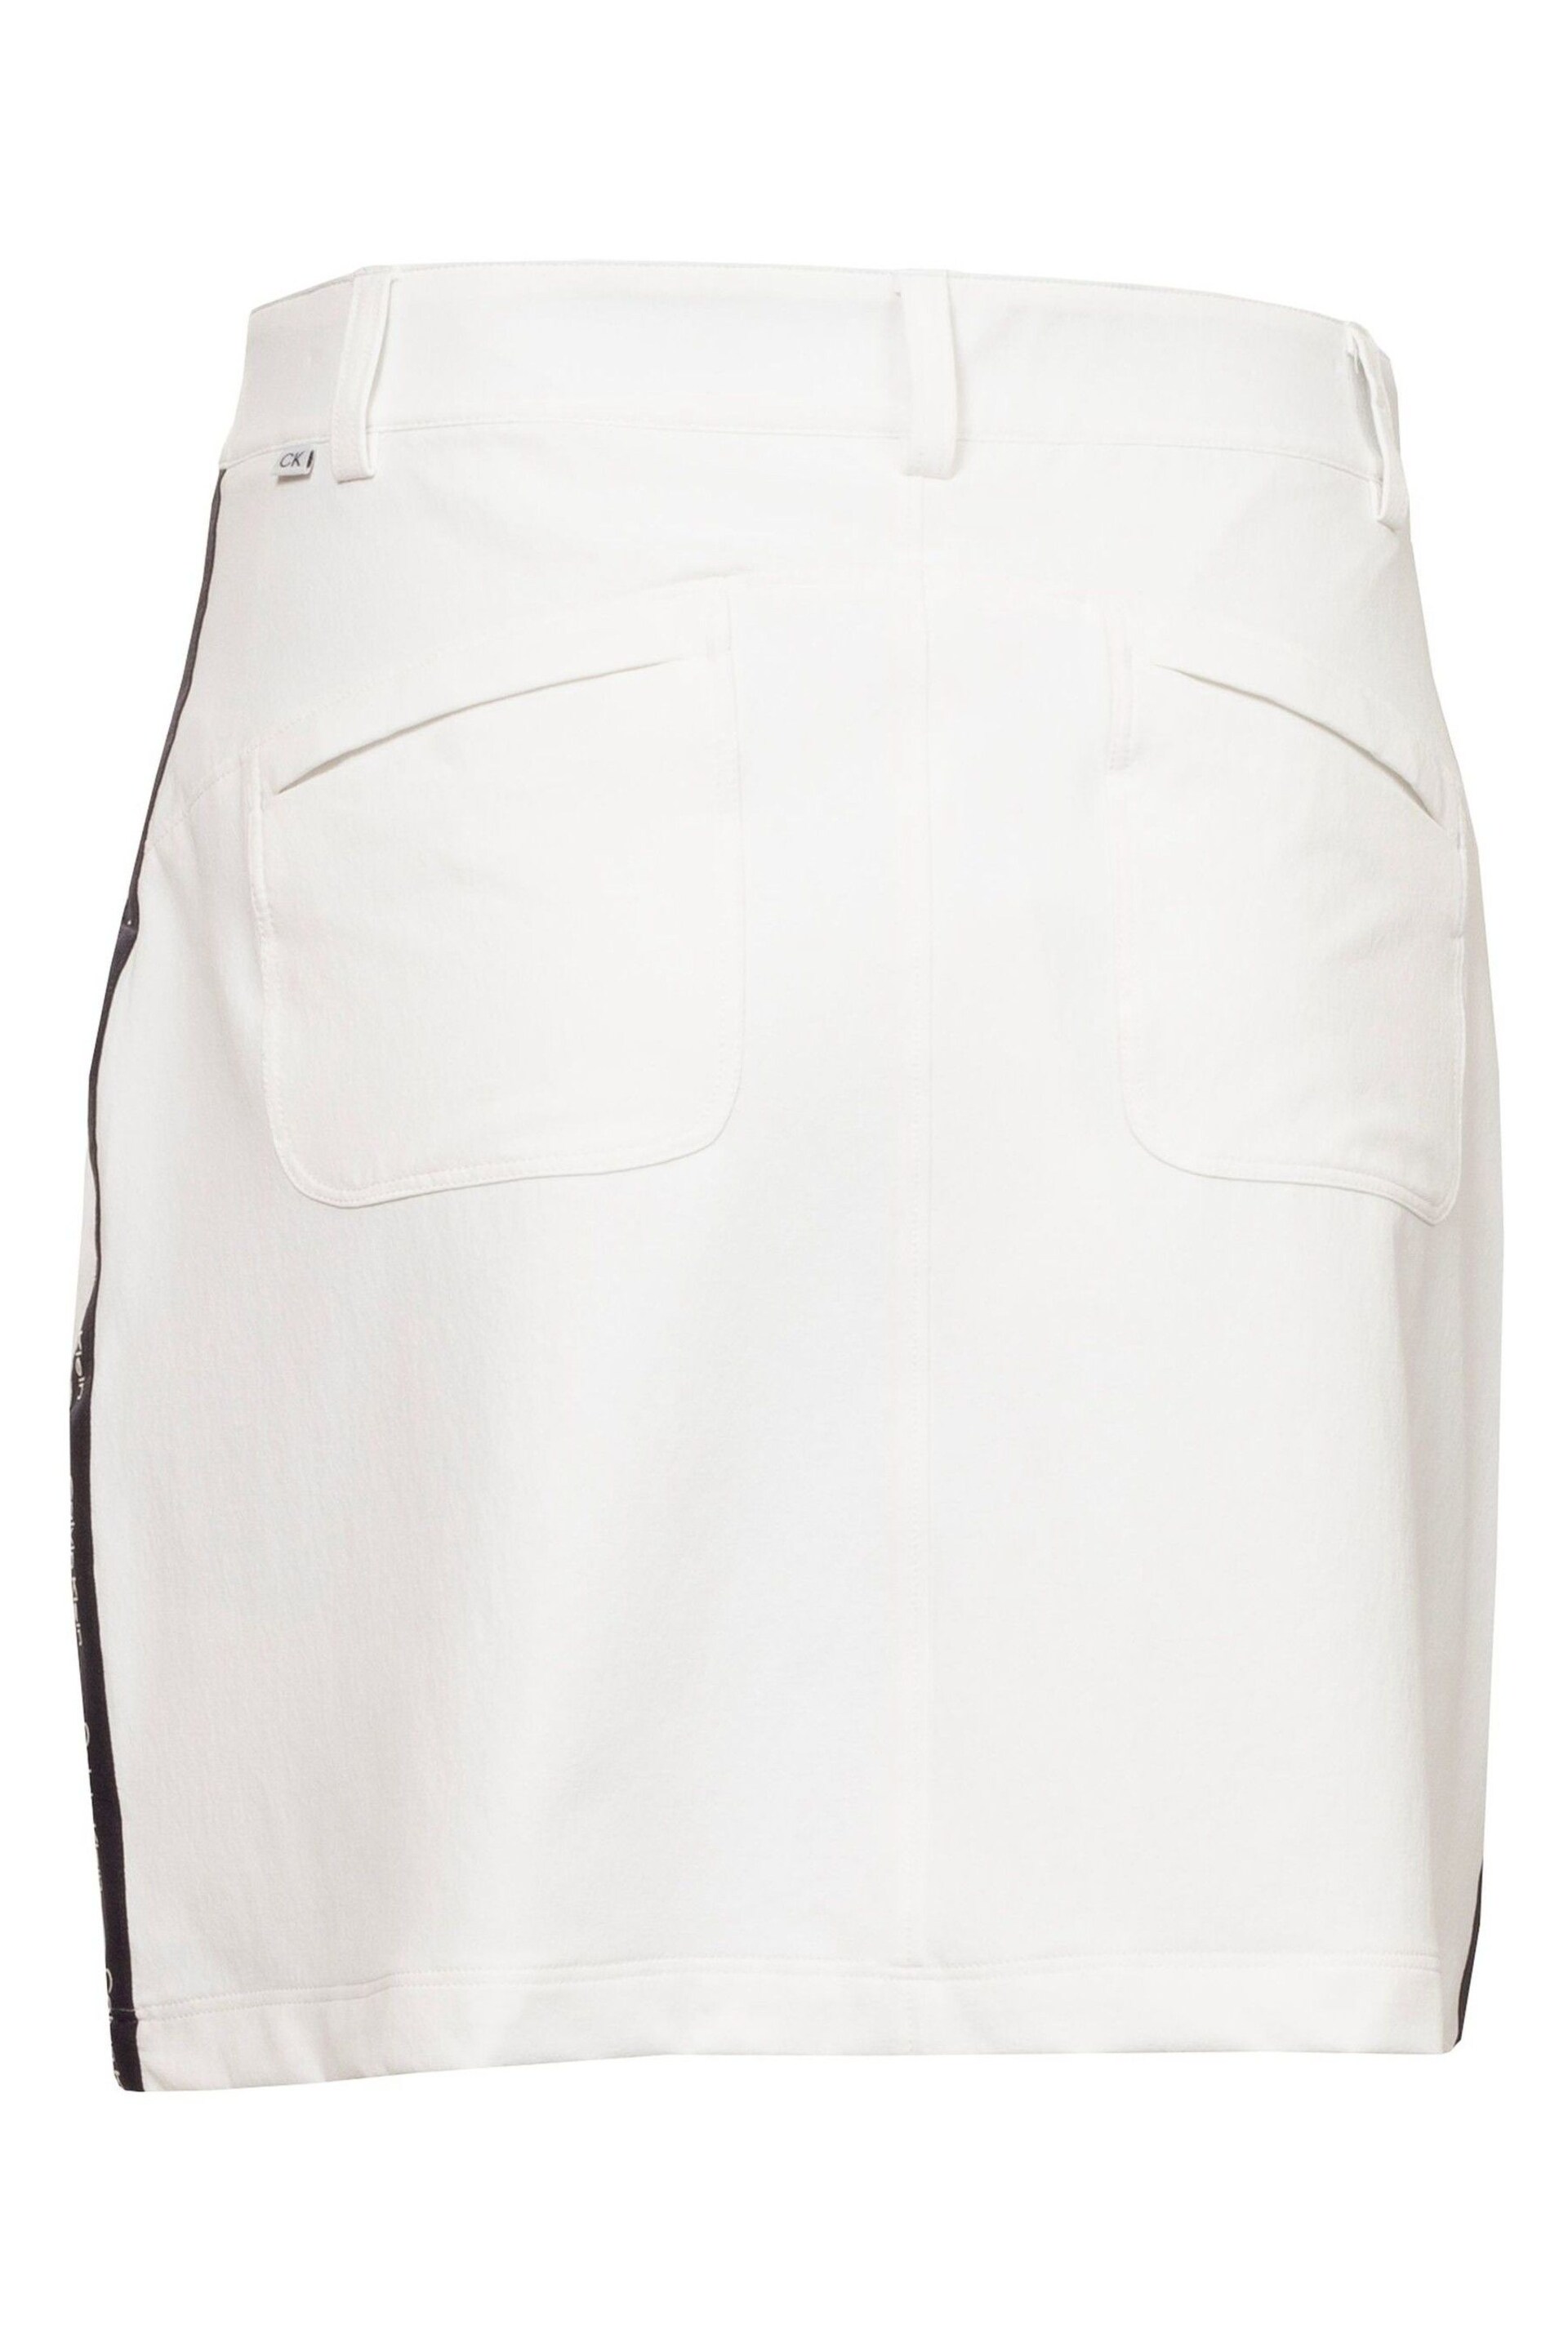 Calvin Klein Golf Rosepoint White Skort - Image 11 of 15